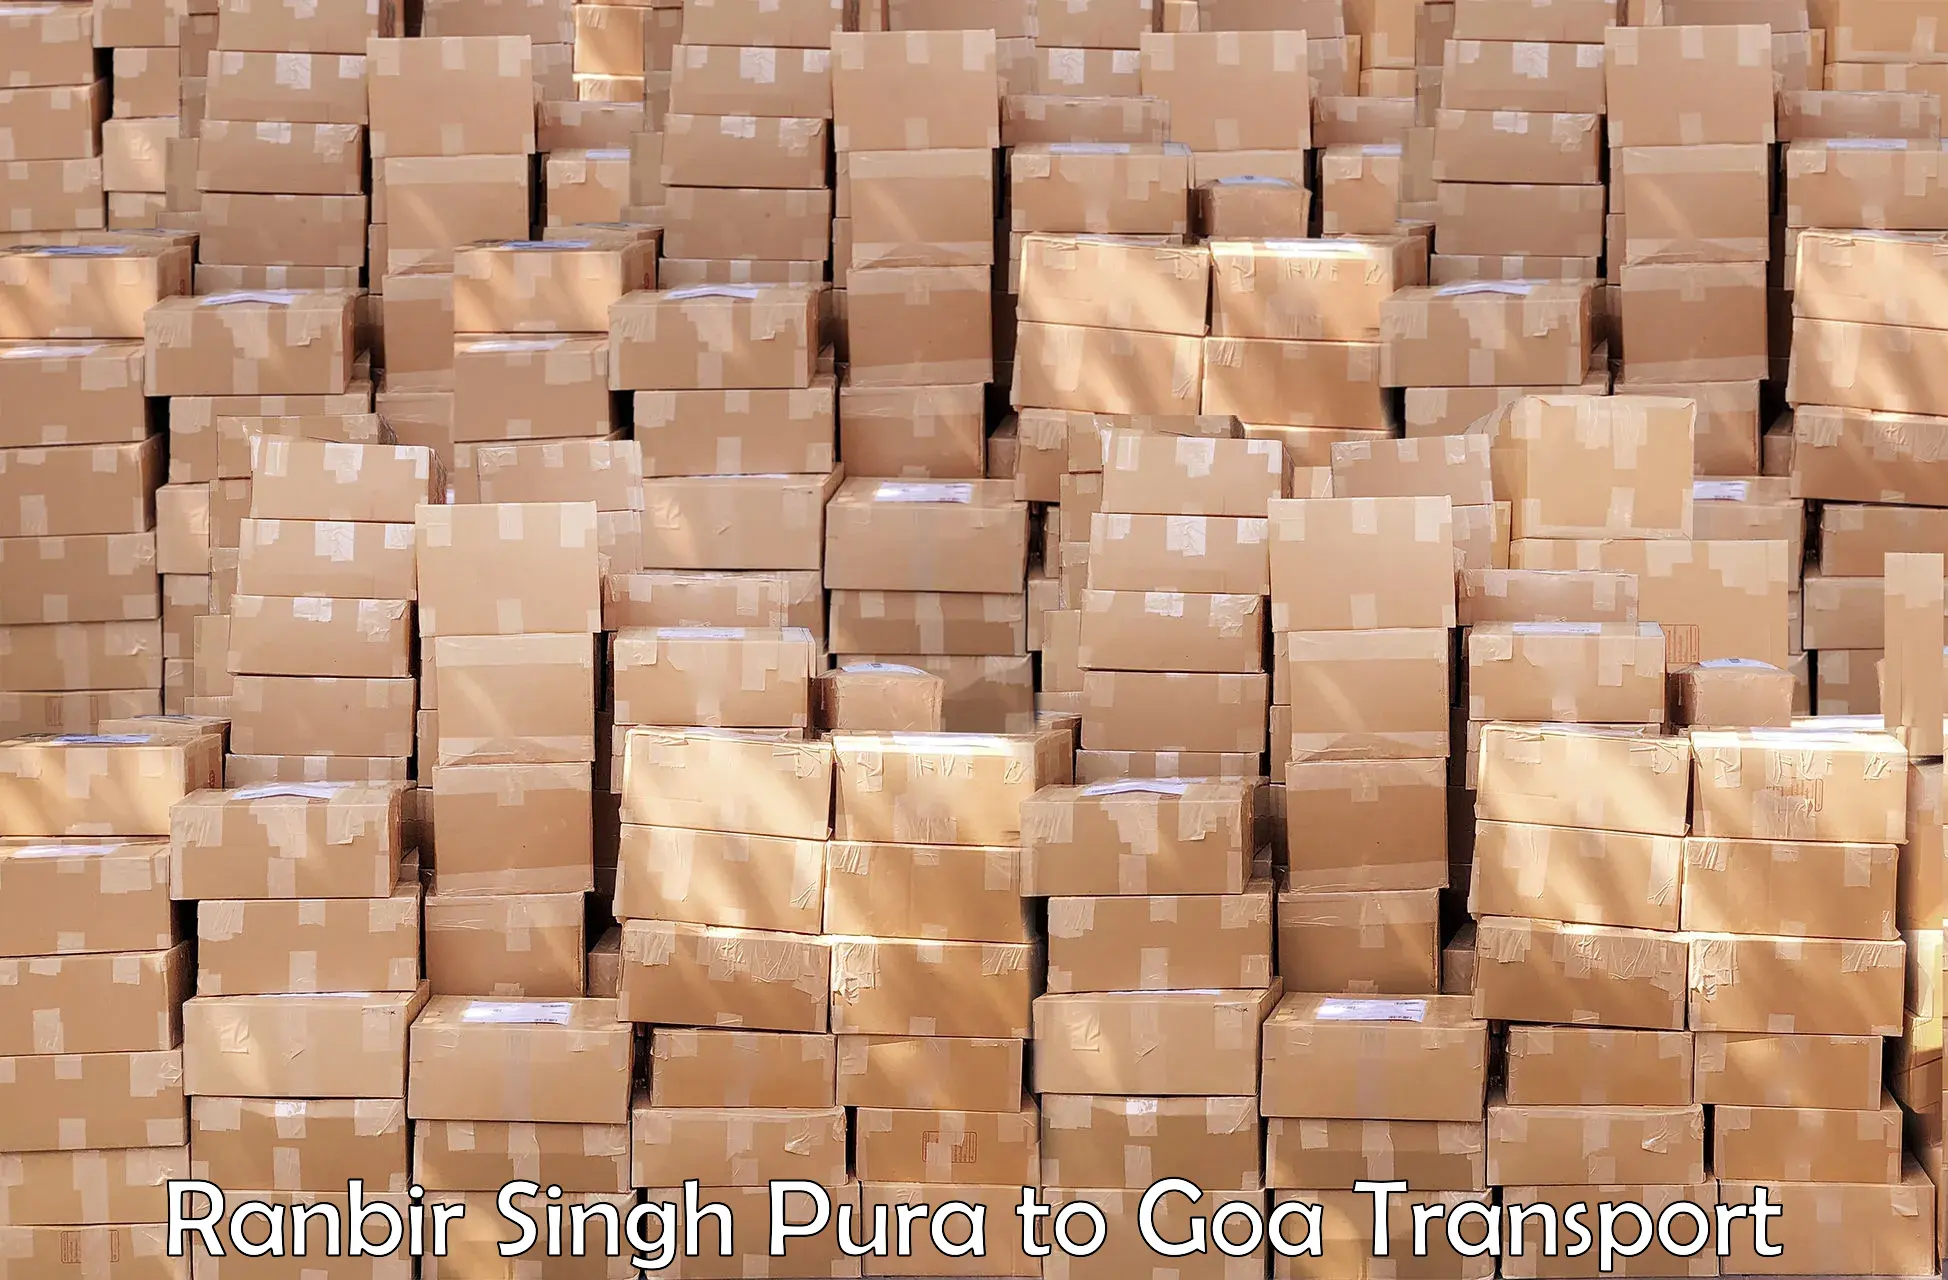 Shipping partner Ranbir Singh Pura to Bardez